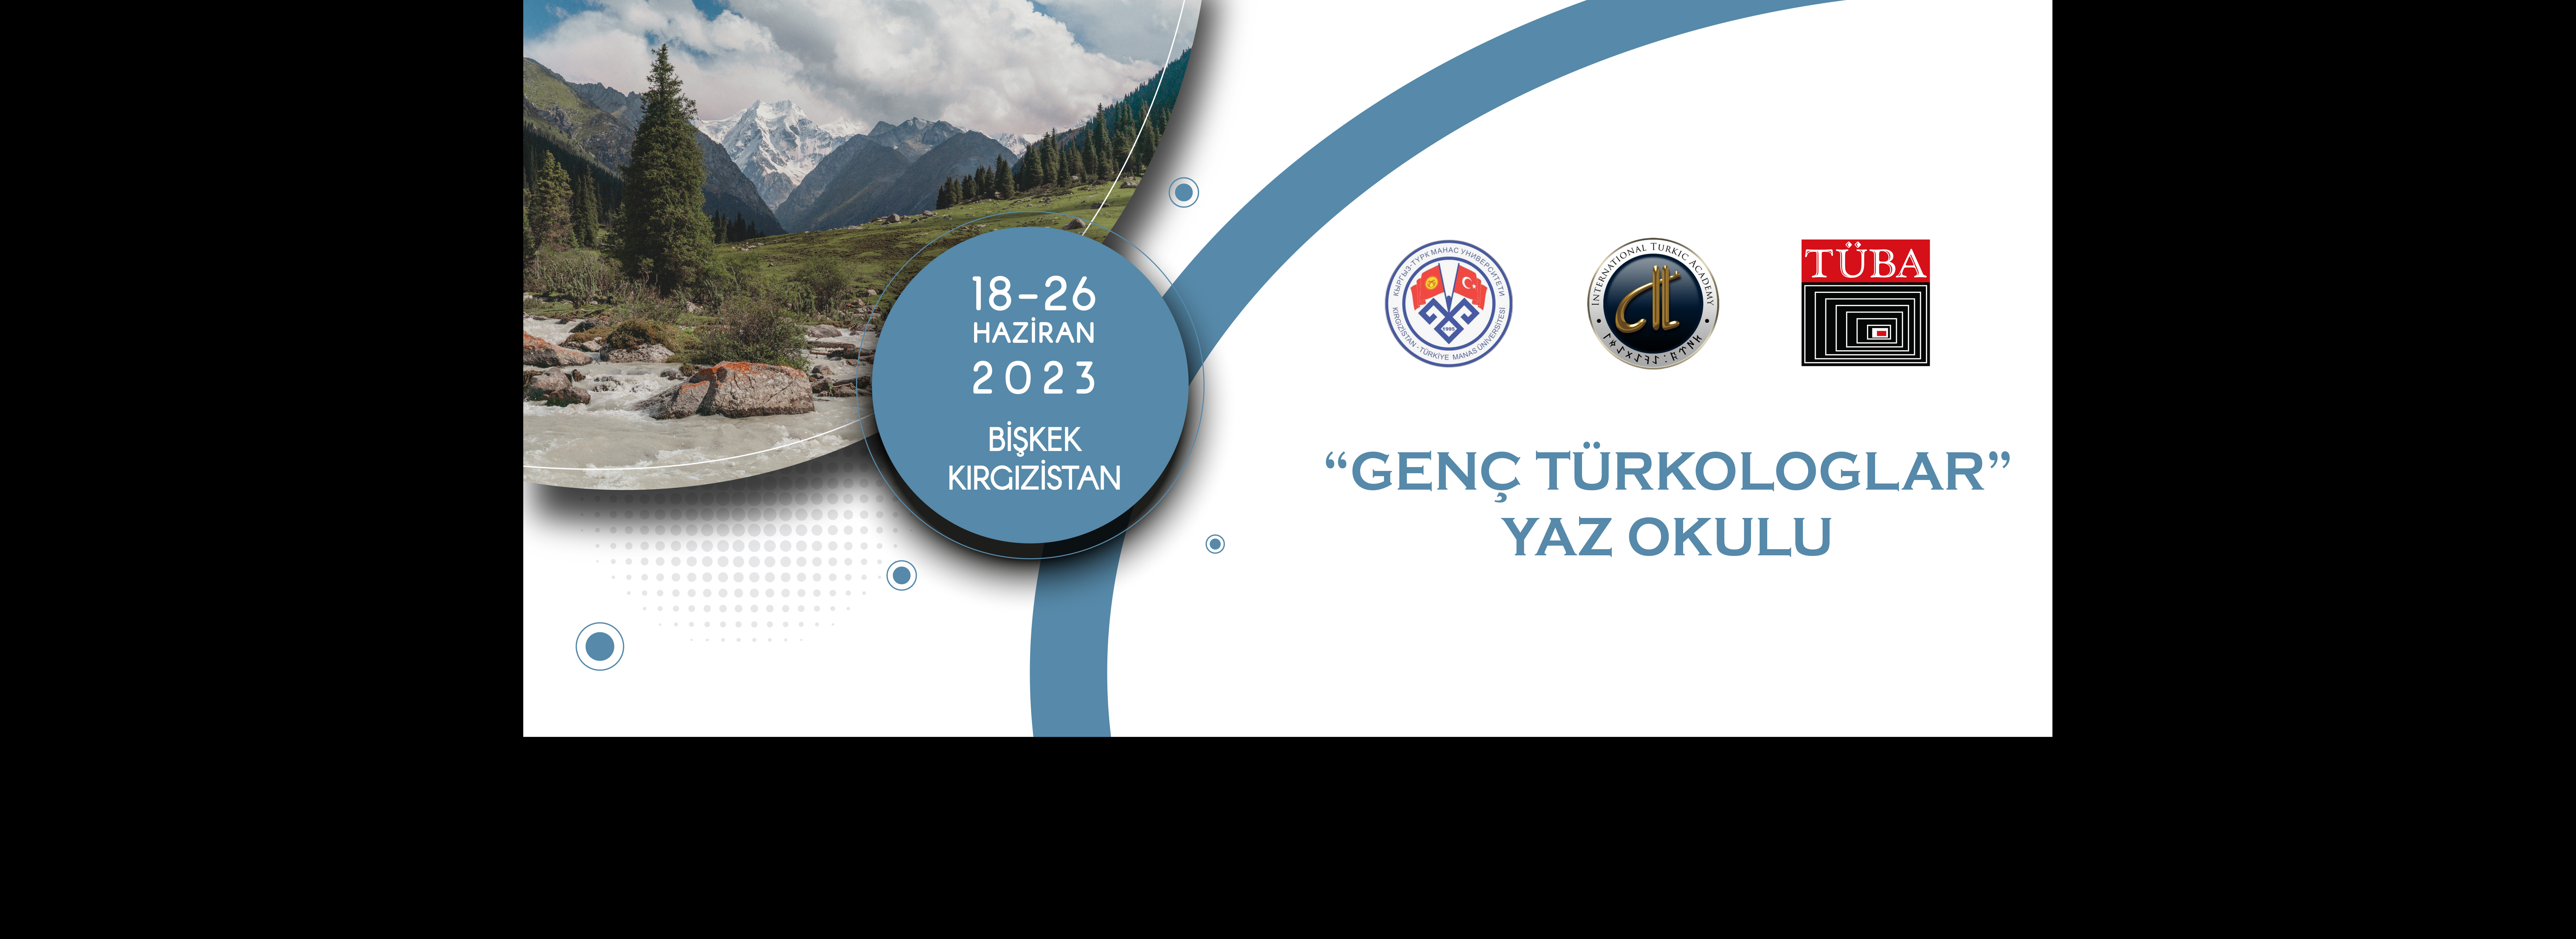 Genç Türkologlar Yaz Okulu Başvuru Sonuçları Açıklandı